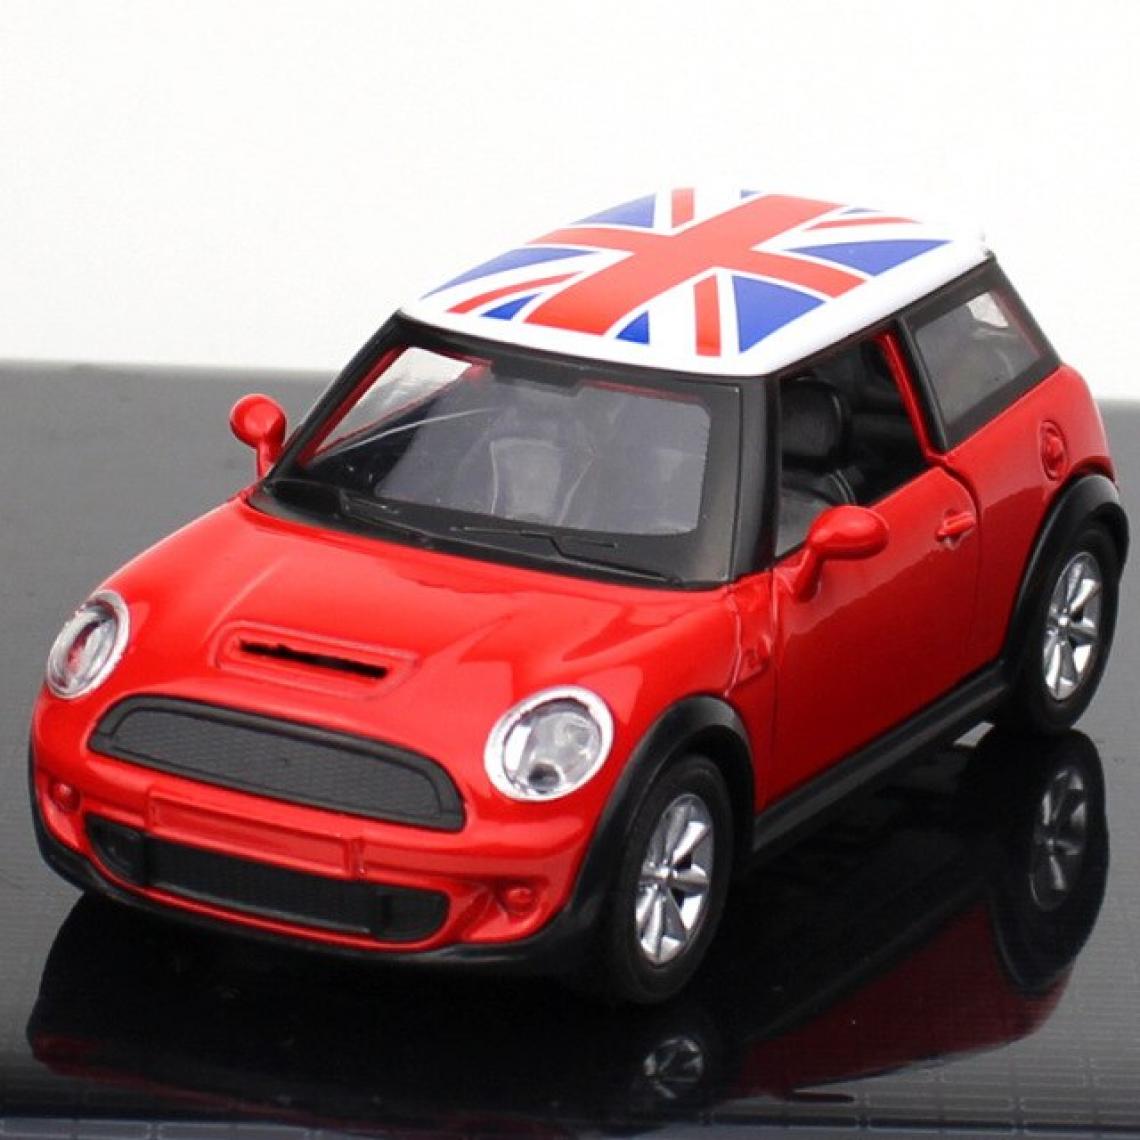 Universal - 1: 30 Modèle d'alliage Modèle de voiture coulée avec jouets d'anniversaire Collection de jouets tirés & 124 ; Voiture jouet coulée sous pression (rouge) - Voitures